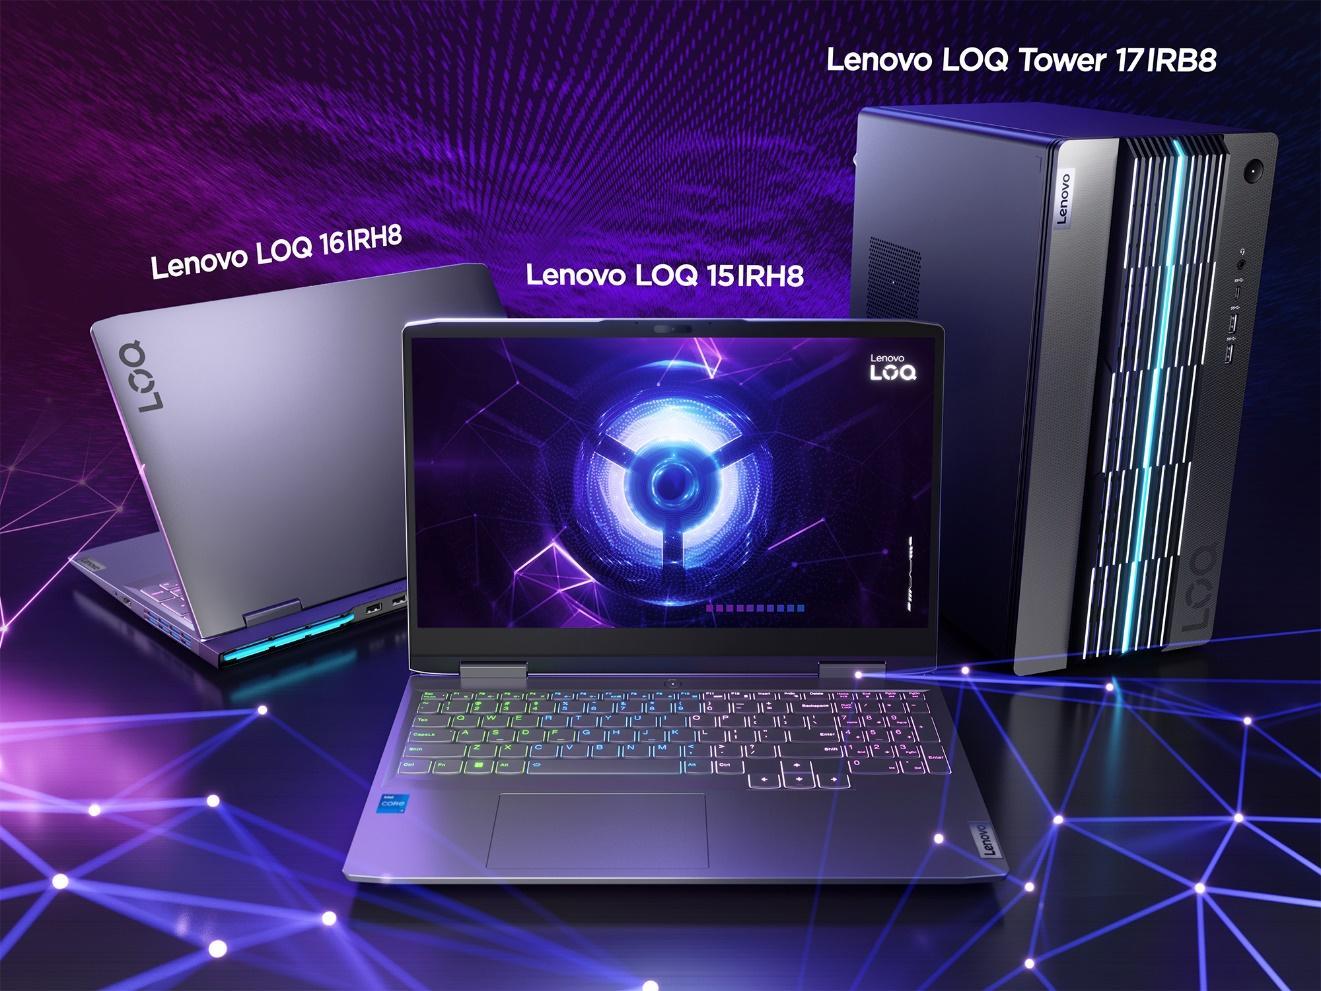 Lenovo ra mắt loạt laptop gaming dùng chip AI chuyên dụng đầu tiên thế giới - wTJNxWE5qO4I ITvPx hLA87syRiXcCEywM0DcMeexEX7ZbFHrzAhq6sYeY wMkmGc59 AKDSgWkJTiqv hpDiMRUkm